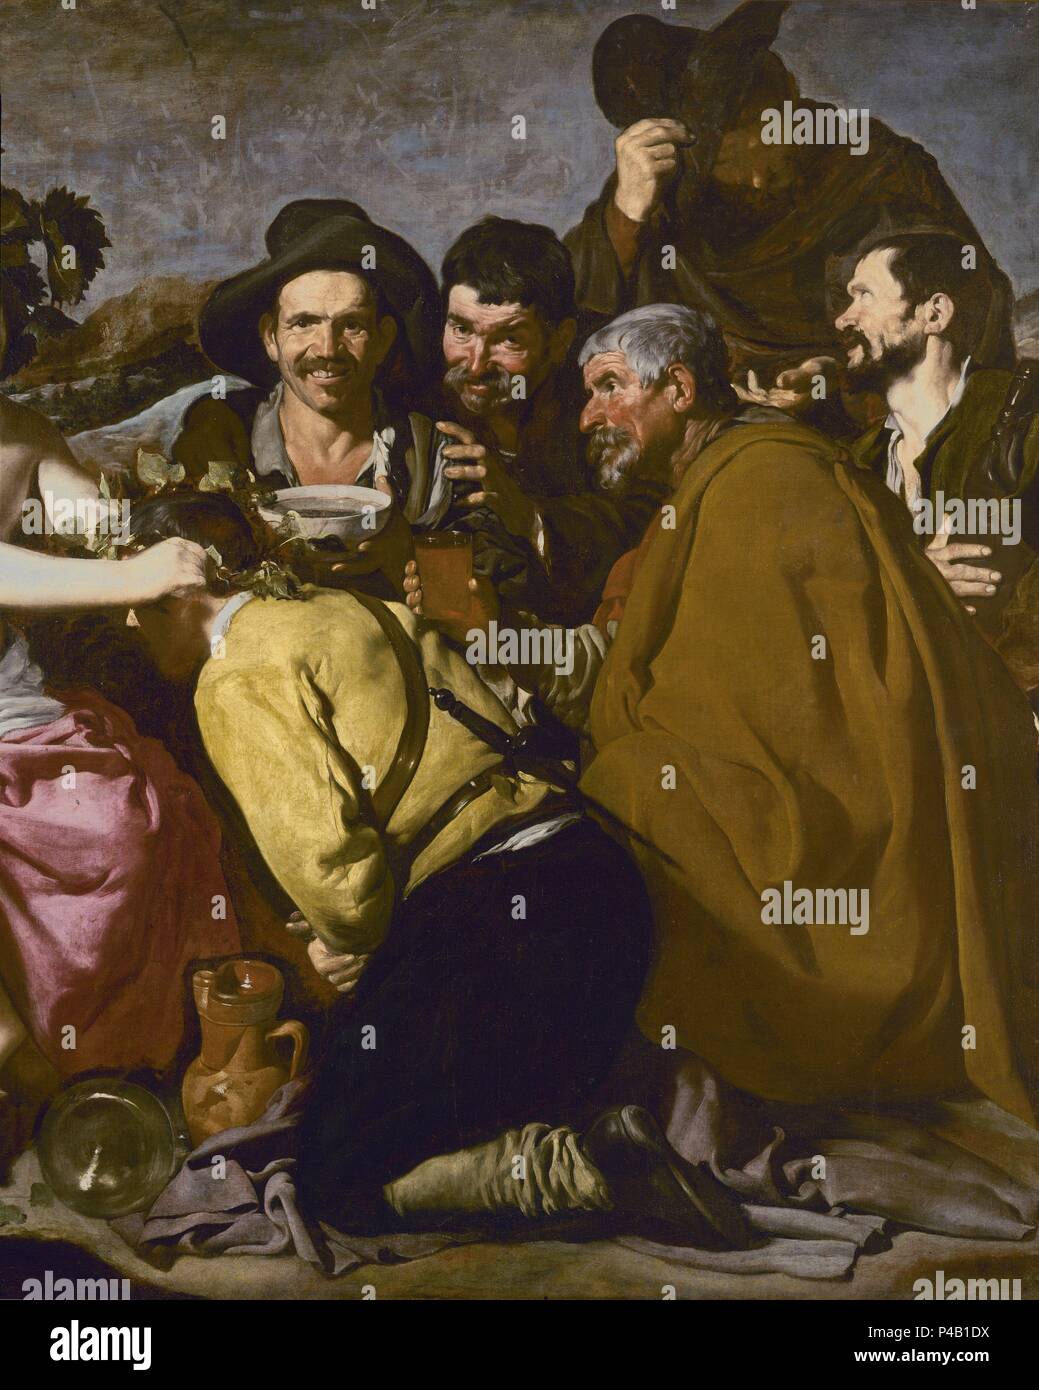 LOS BORRACHOS O EL TRIUNFO DE BACO - DETALLE DERECHO - 1629 - O/L - NP 1170 - BARROCO ESPAÑOL - CONJUNTO 4246. Auteur : Diego Velázquez (1599-1660). Emplacement : Museo del Prado-PINTURA, MADRID, ESPAGNE. Banque D'Images